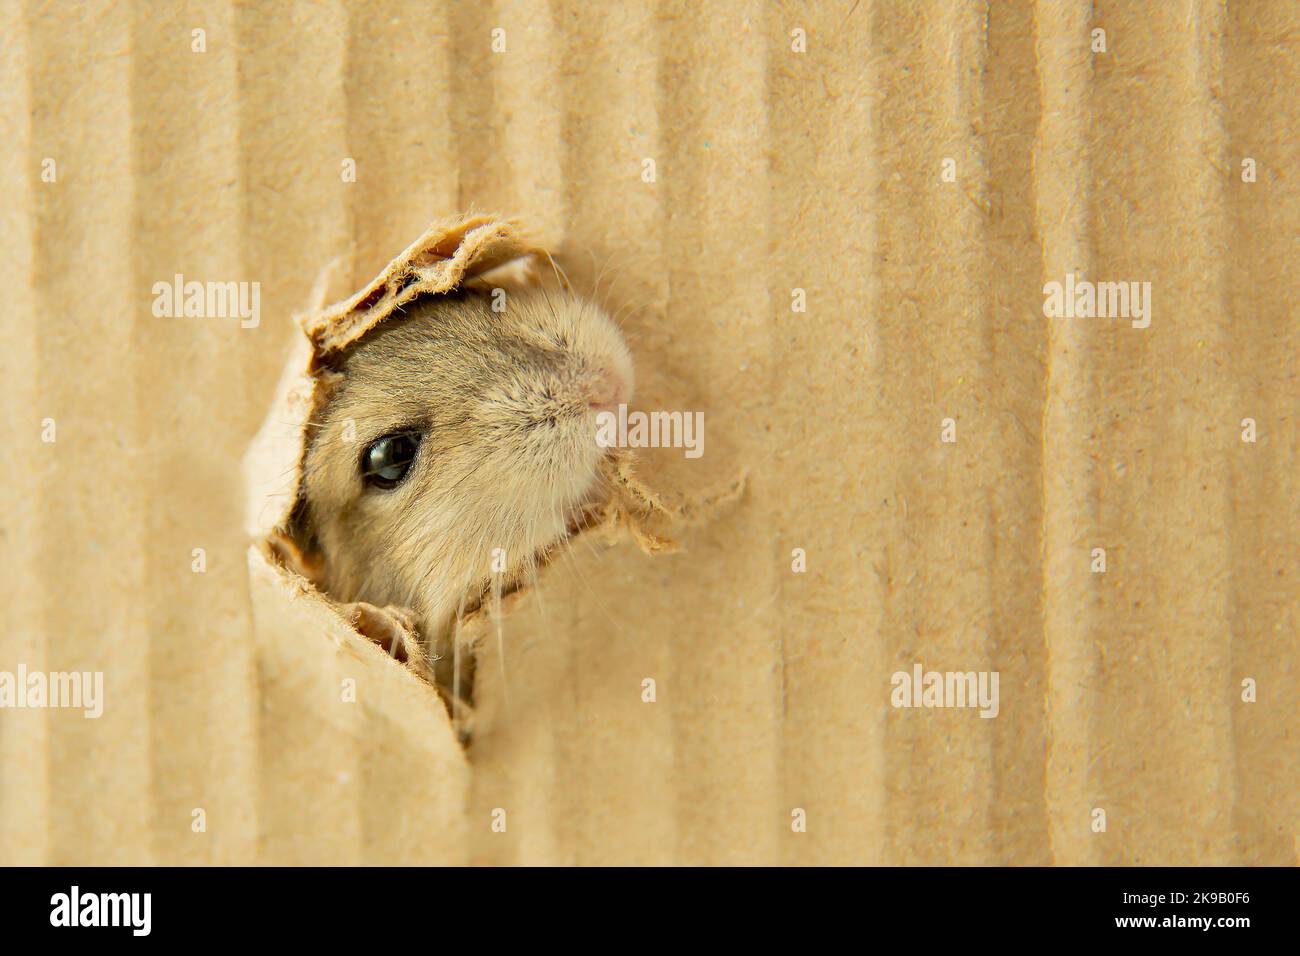 Die Mündung des Hamsters steigt aus dem Loch. Ein Hamster klettert aus einem Papploch. Die Schnauze der Nagetiere befindet sich in der Lücke. Mausauge. Stockfoto